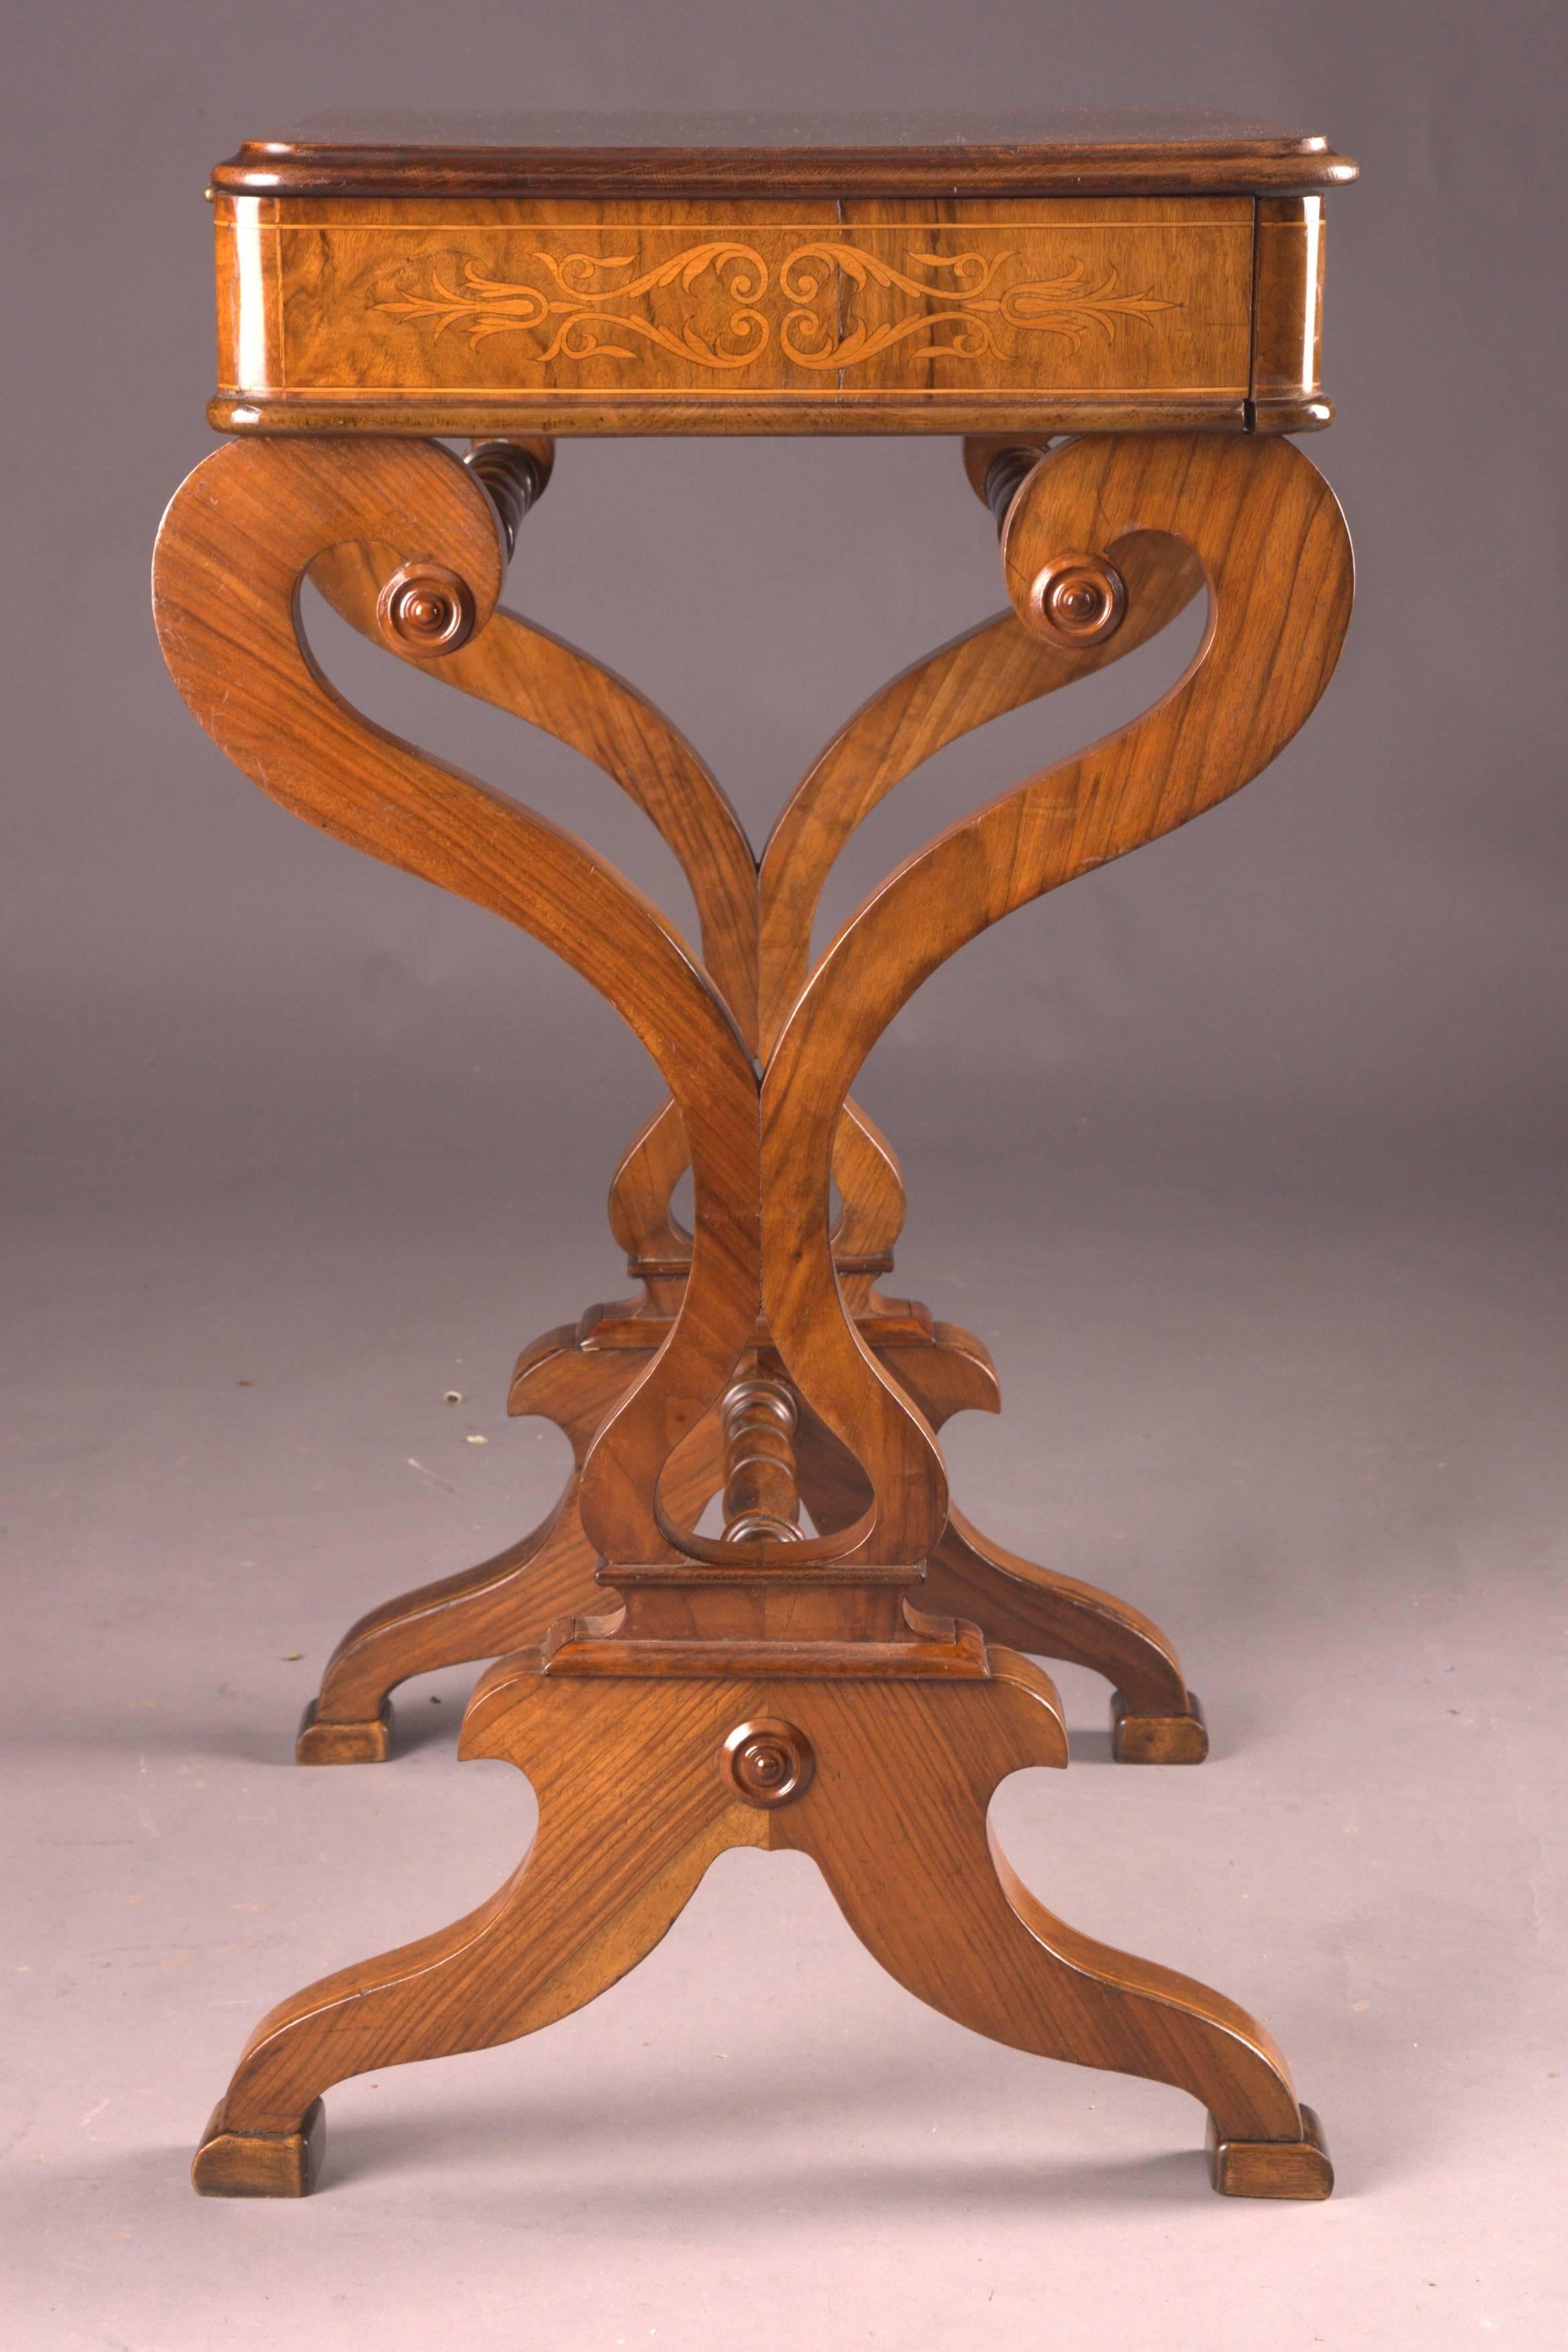 19th Century Antique Biedermeier Sewing Table from Vienna Walnut Root Veneer 5